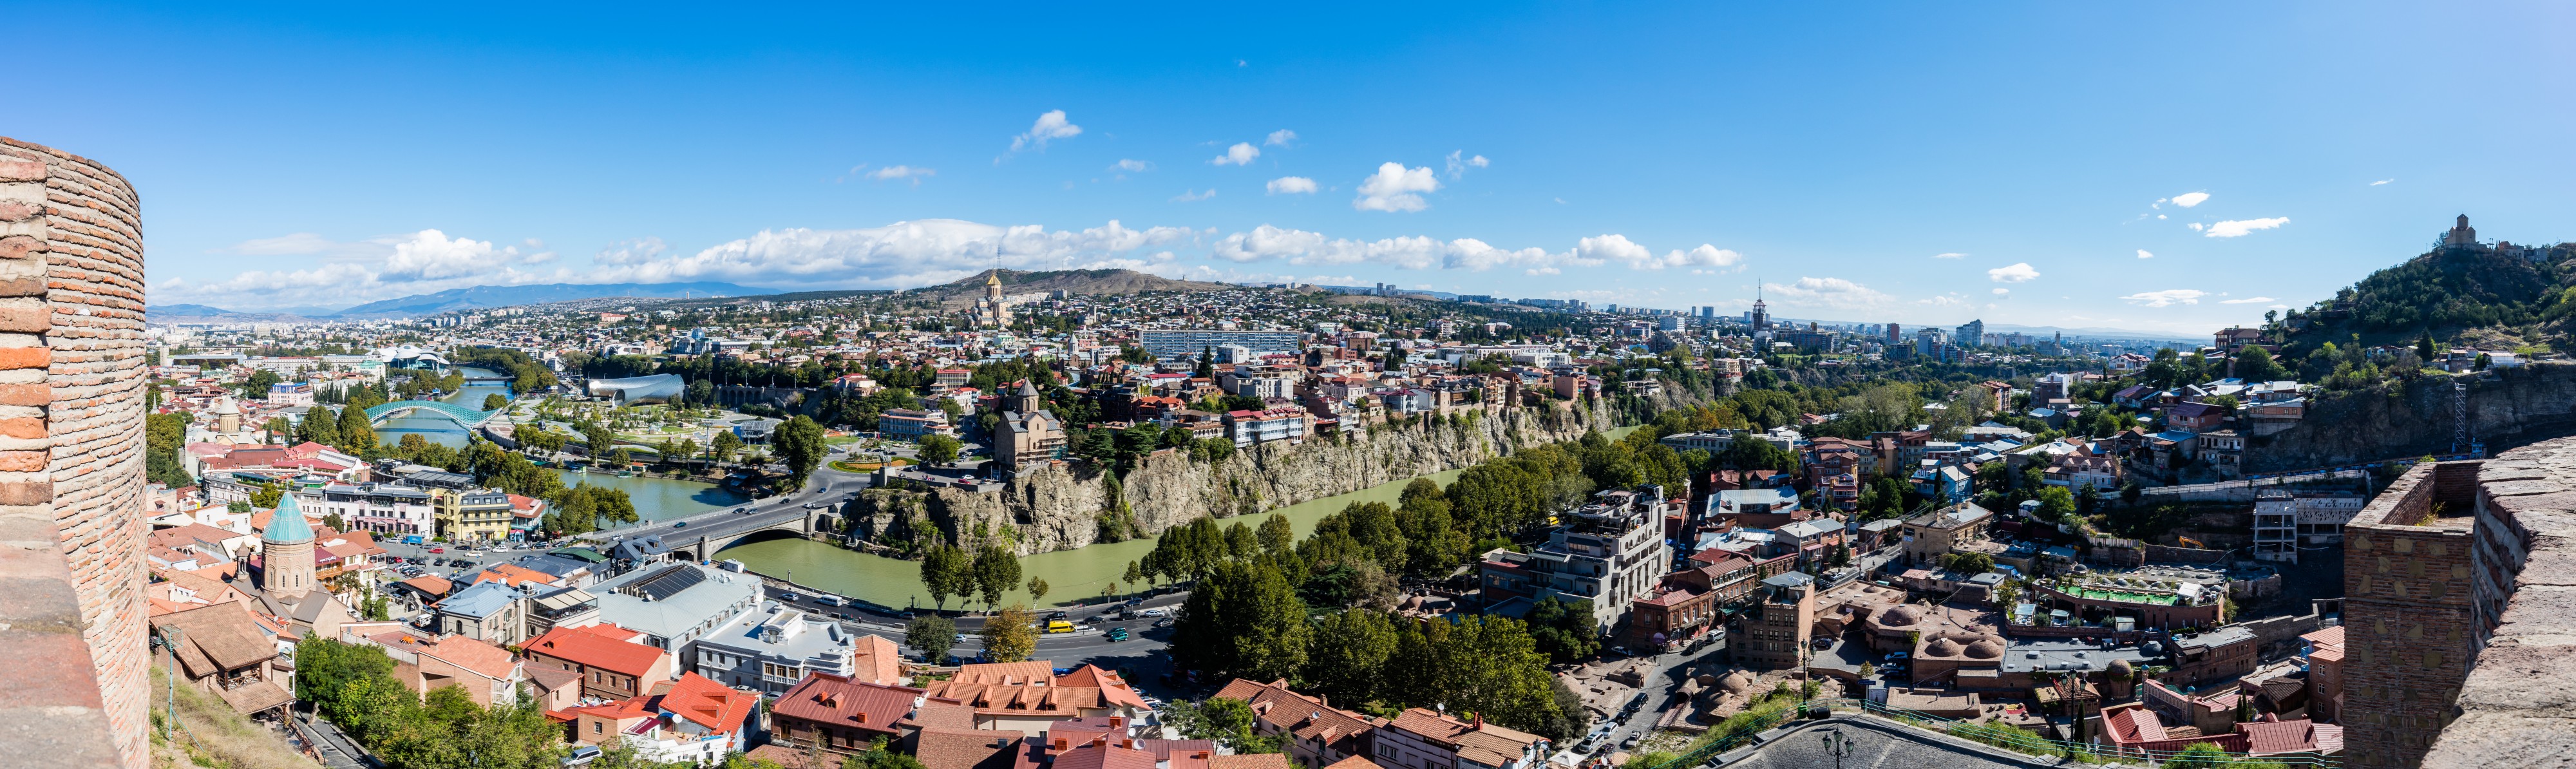 Vista de Tiflis, Georgia, 2016-09-29, DD 31-33 PAN